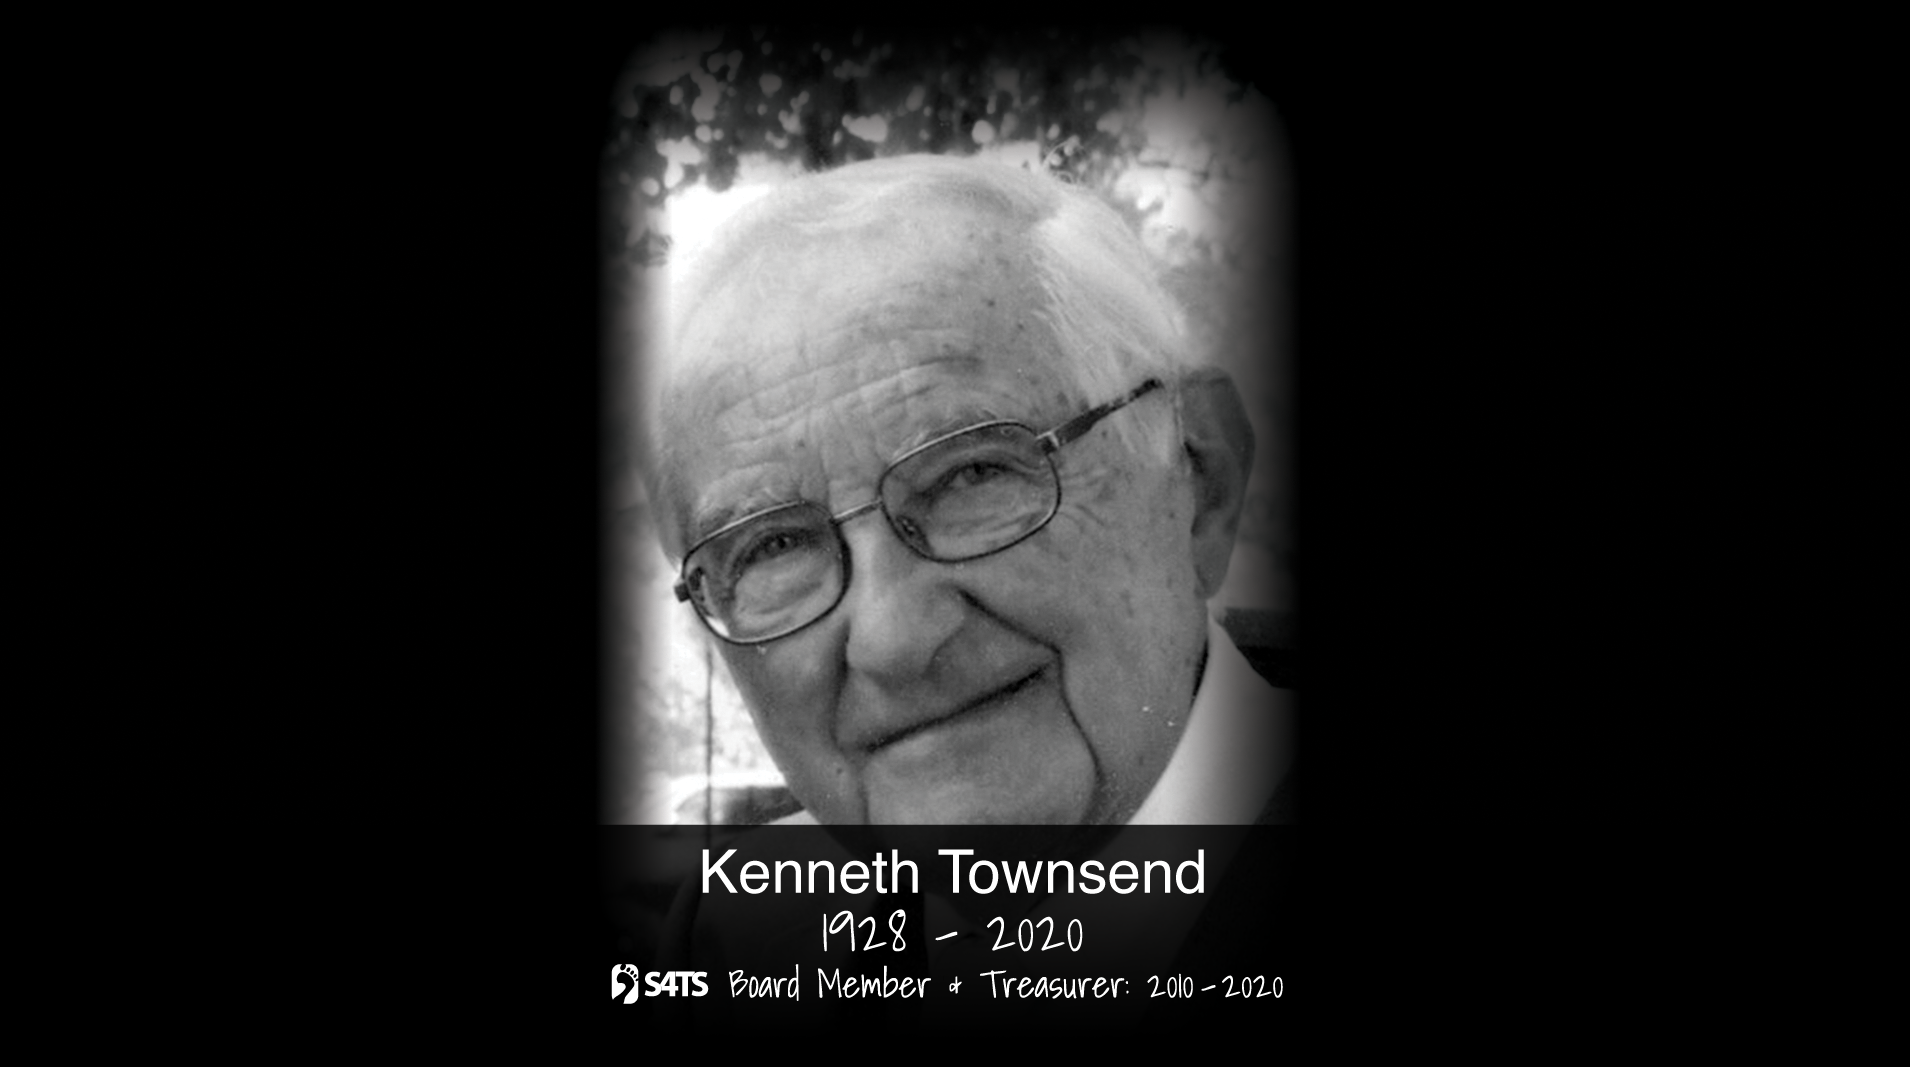 In Memoriam - Kenneth Townsend